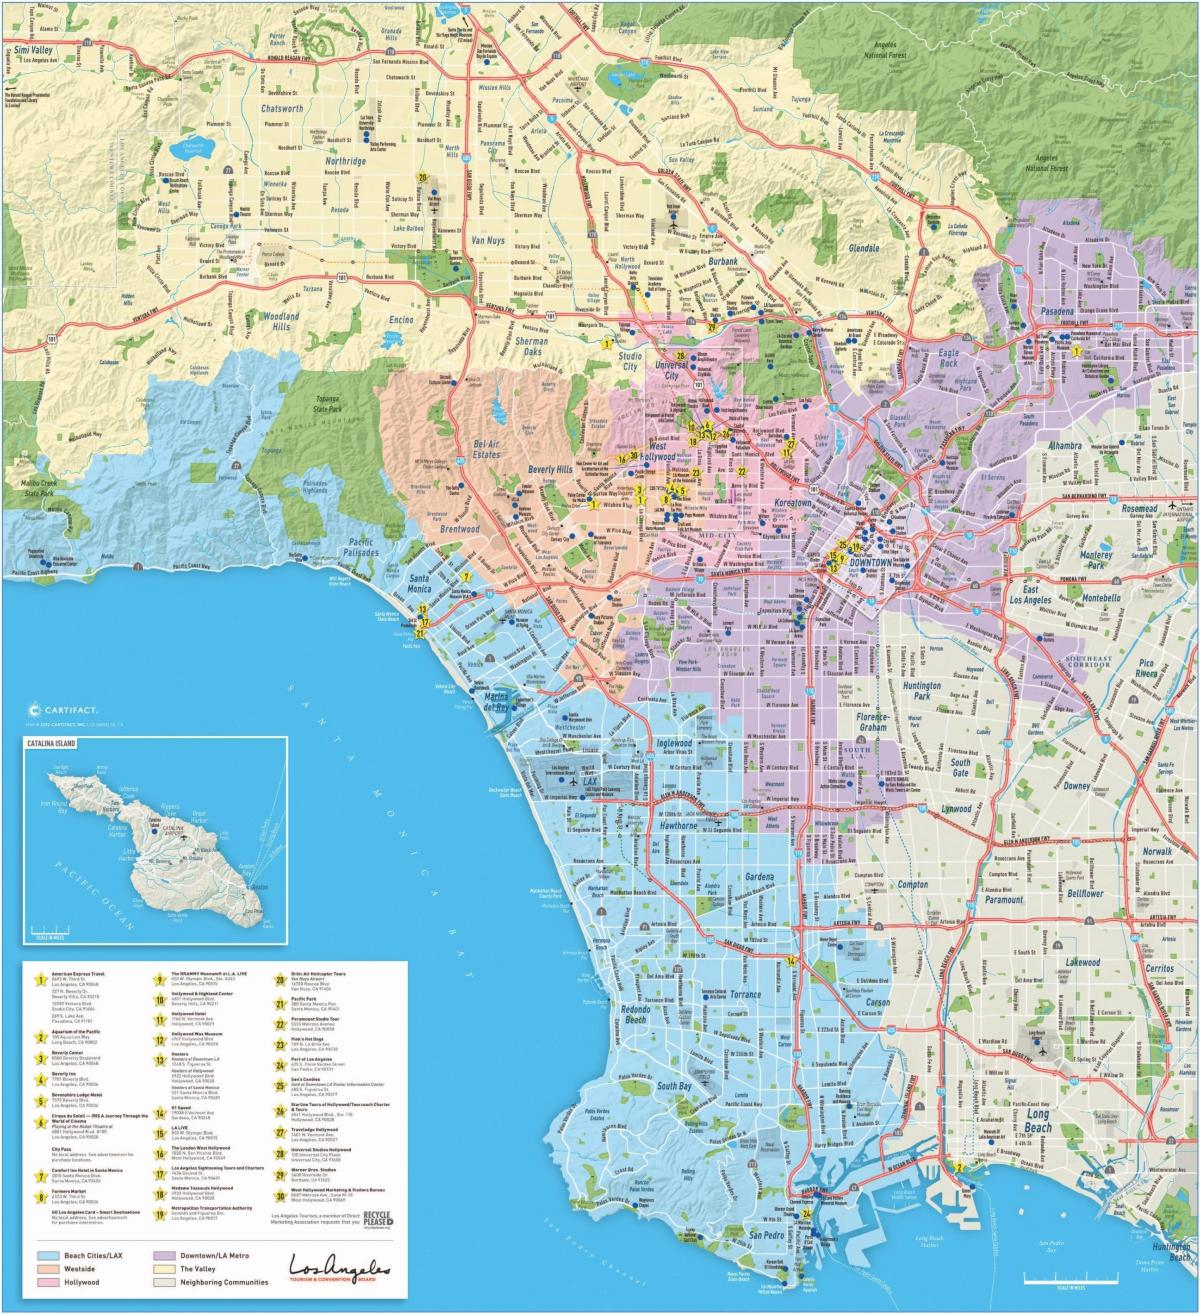 地図のビバリーヒルズロサンゼルス